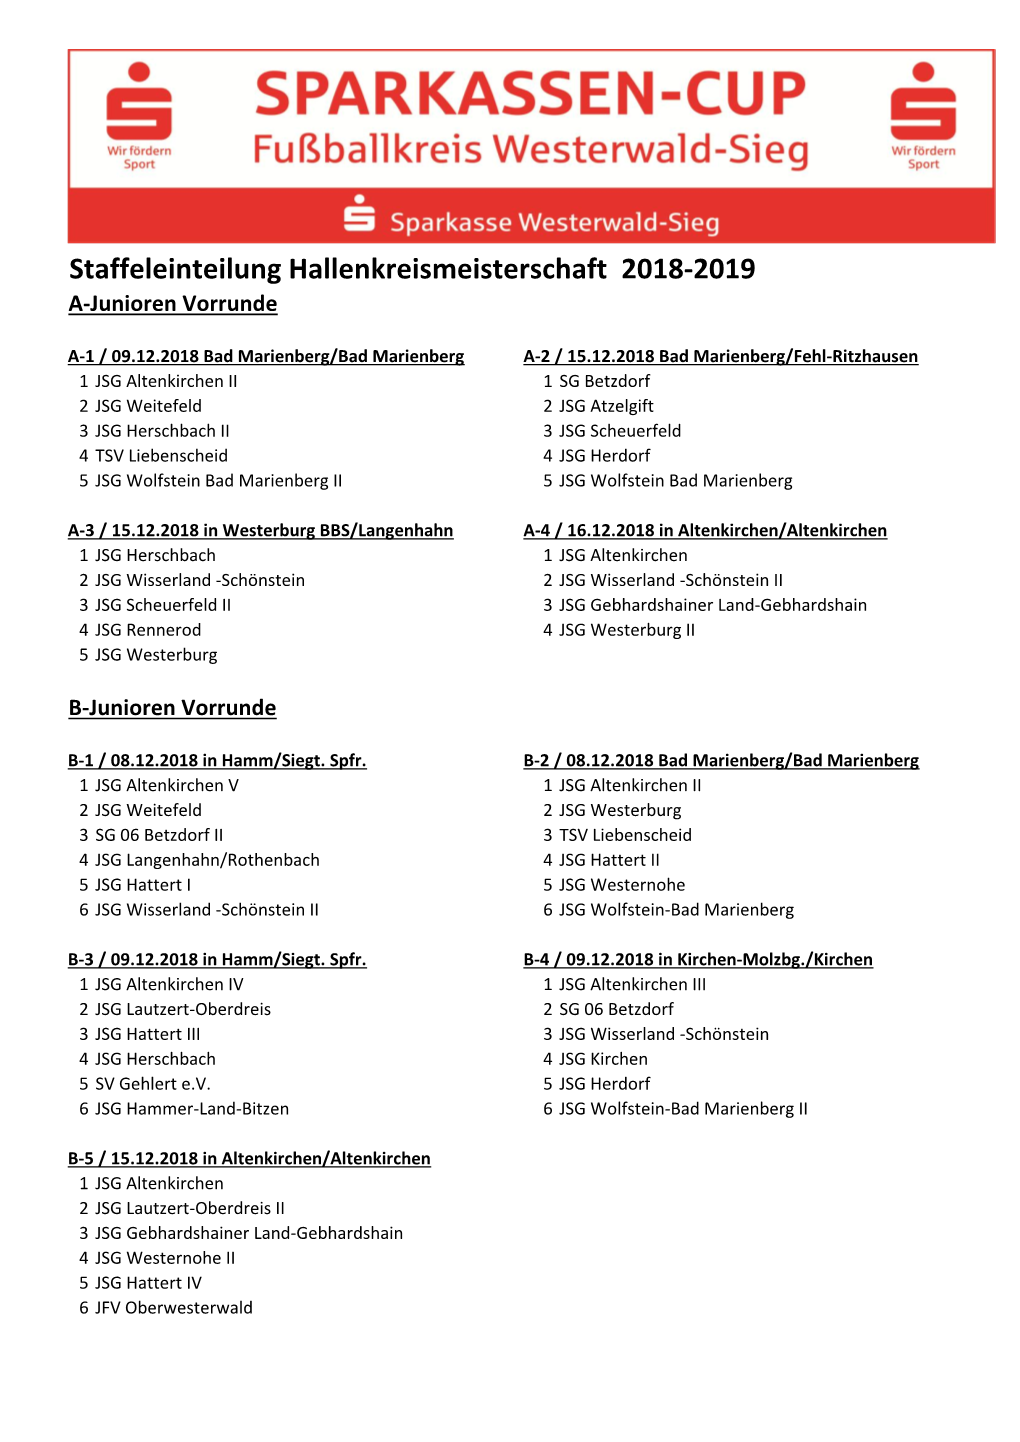 Staffeleinteilung Hallenkreismeisterschaft 2018-2019 A-Junioren Vorrunde